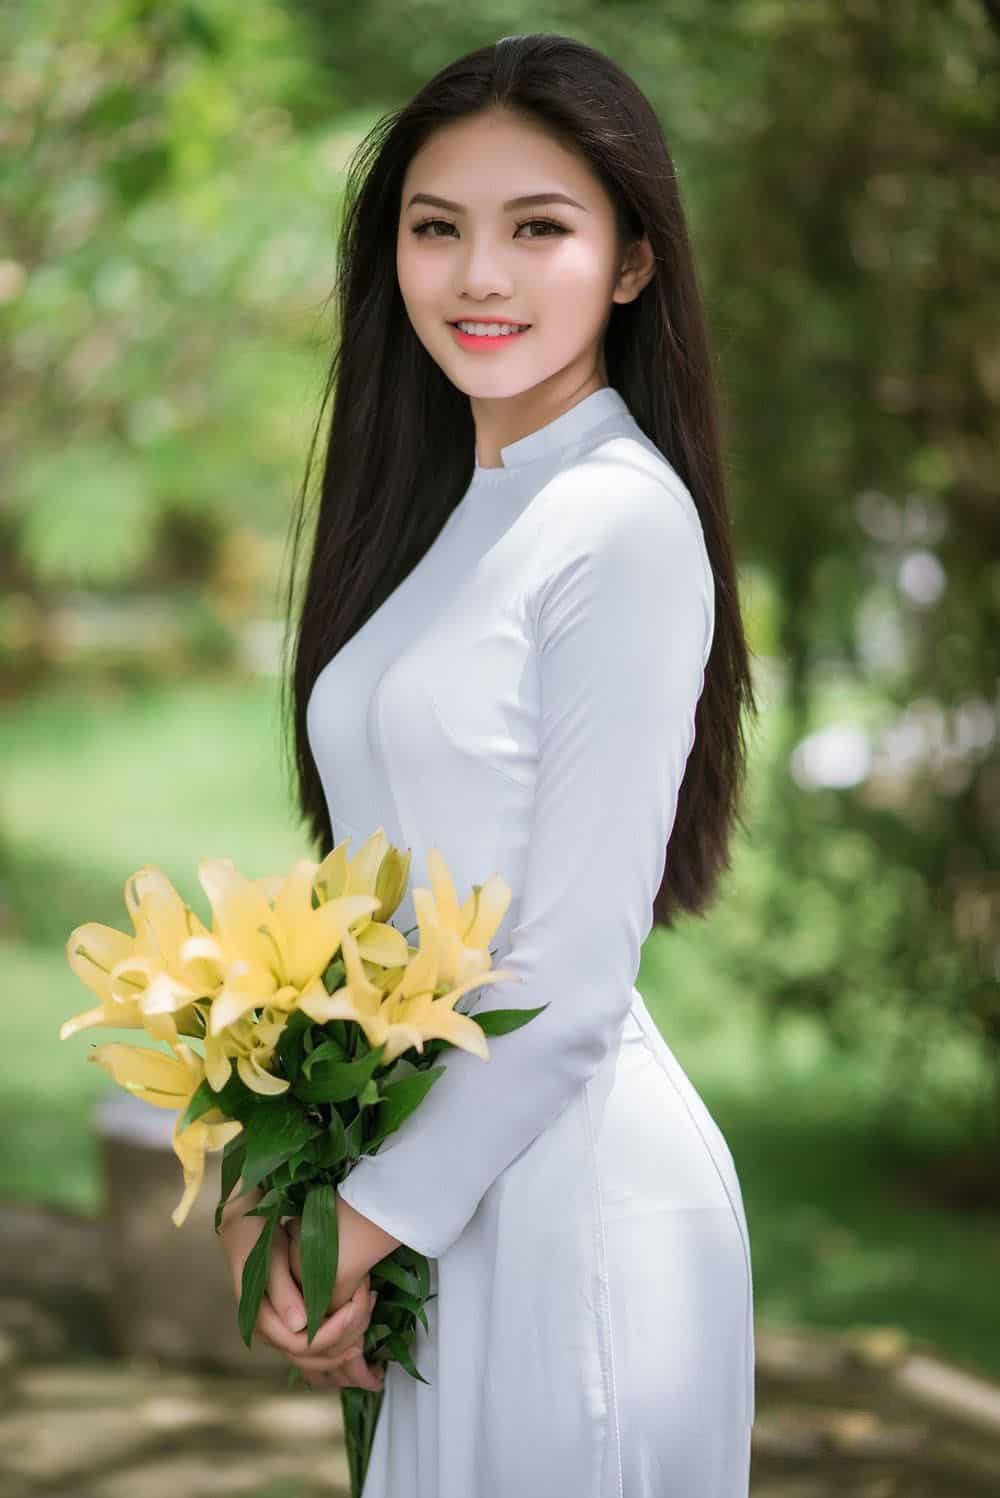 Hình ảnh gái xinh mặc áo dài với hoa